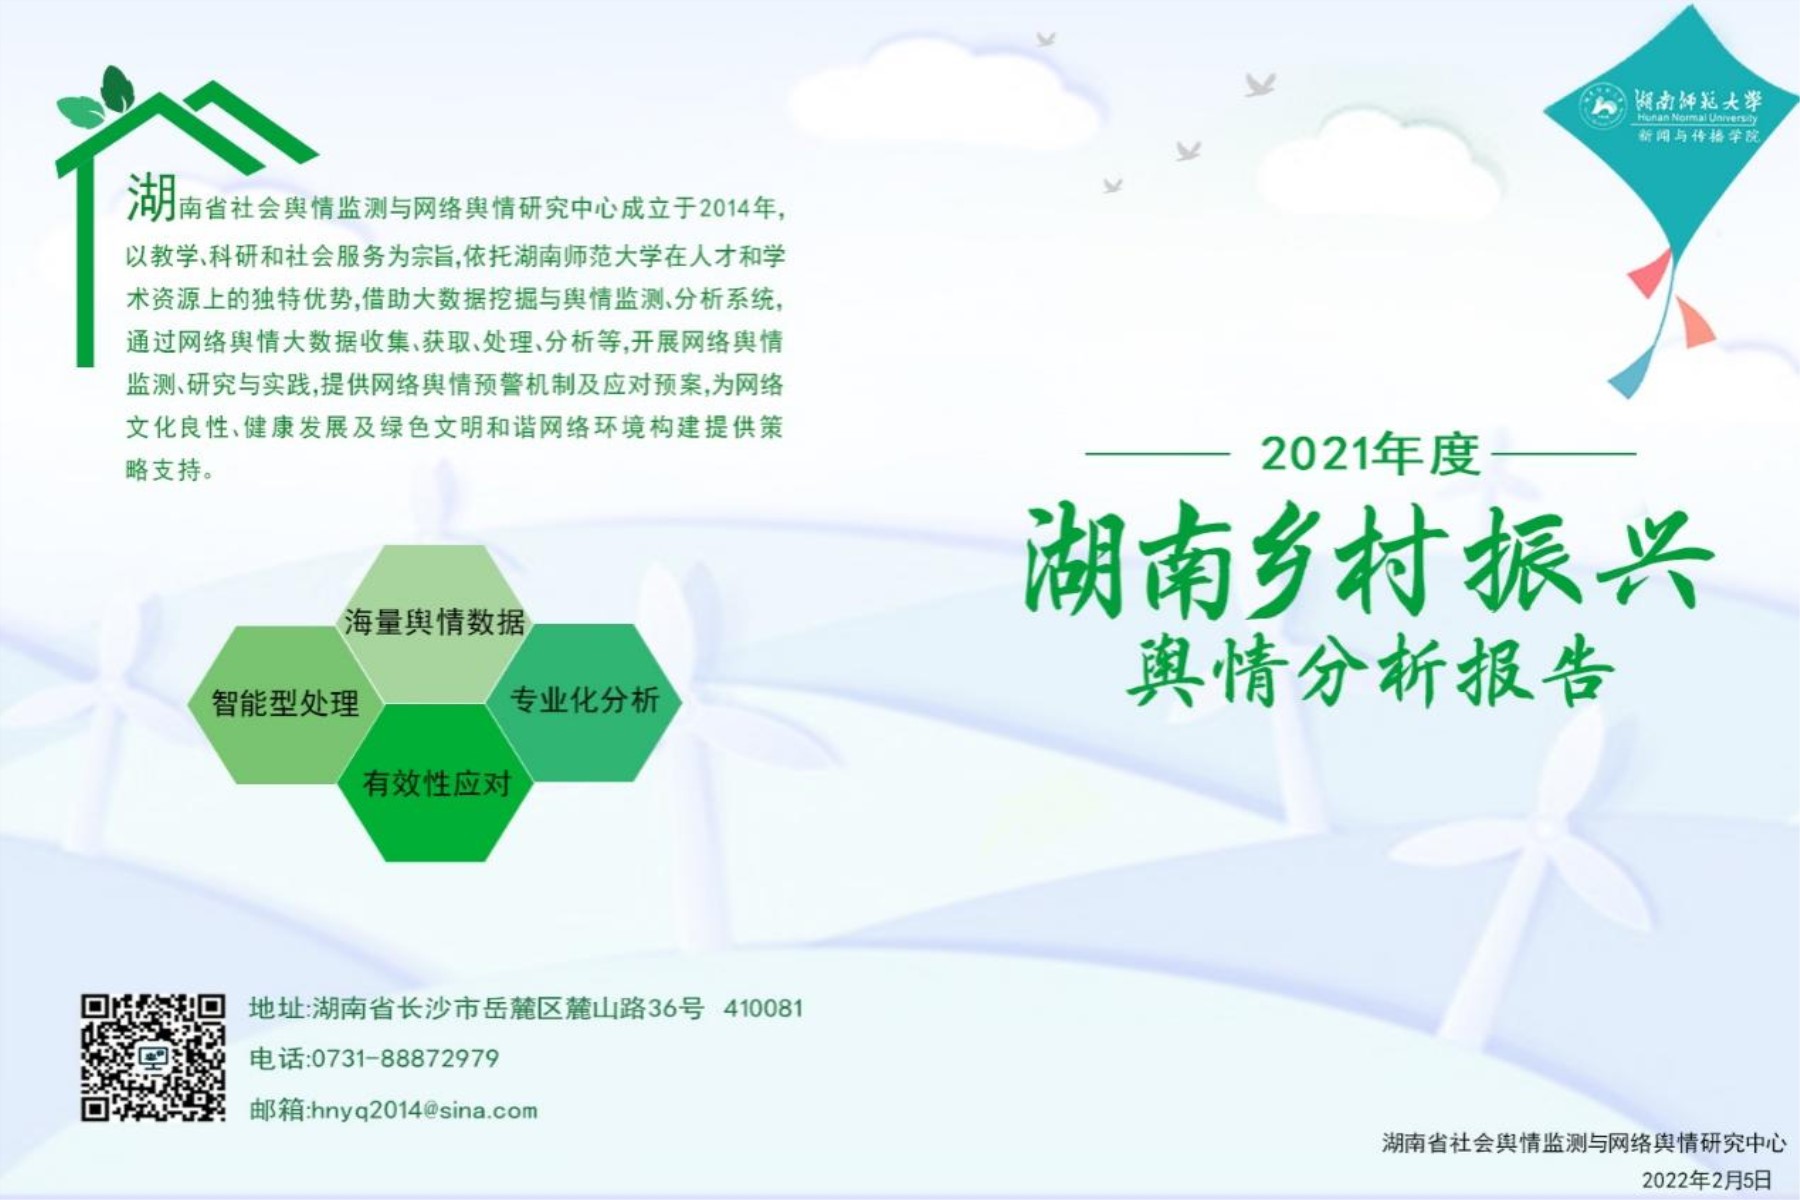 湖南省社会舆情监测与网络舆情研究中心发布2021年度国内首份乡村振兴舆情分析报告